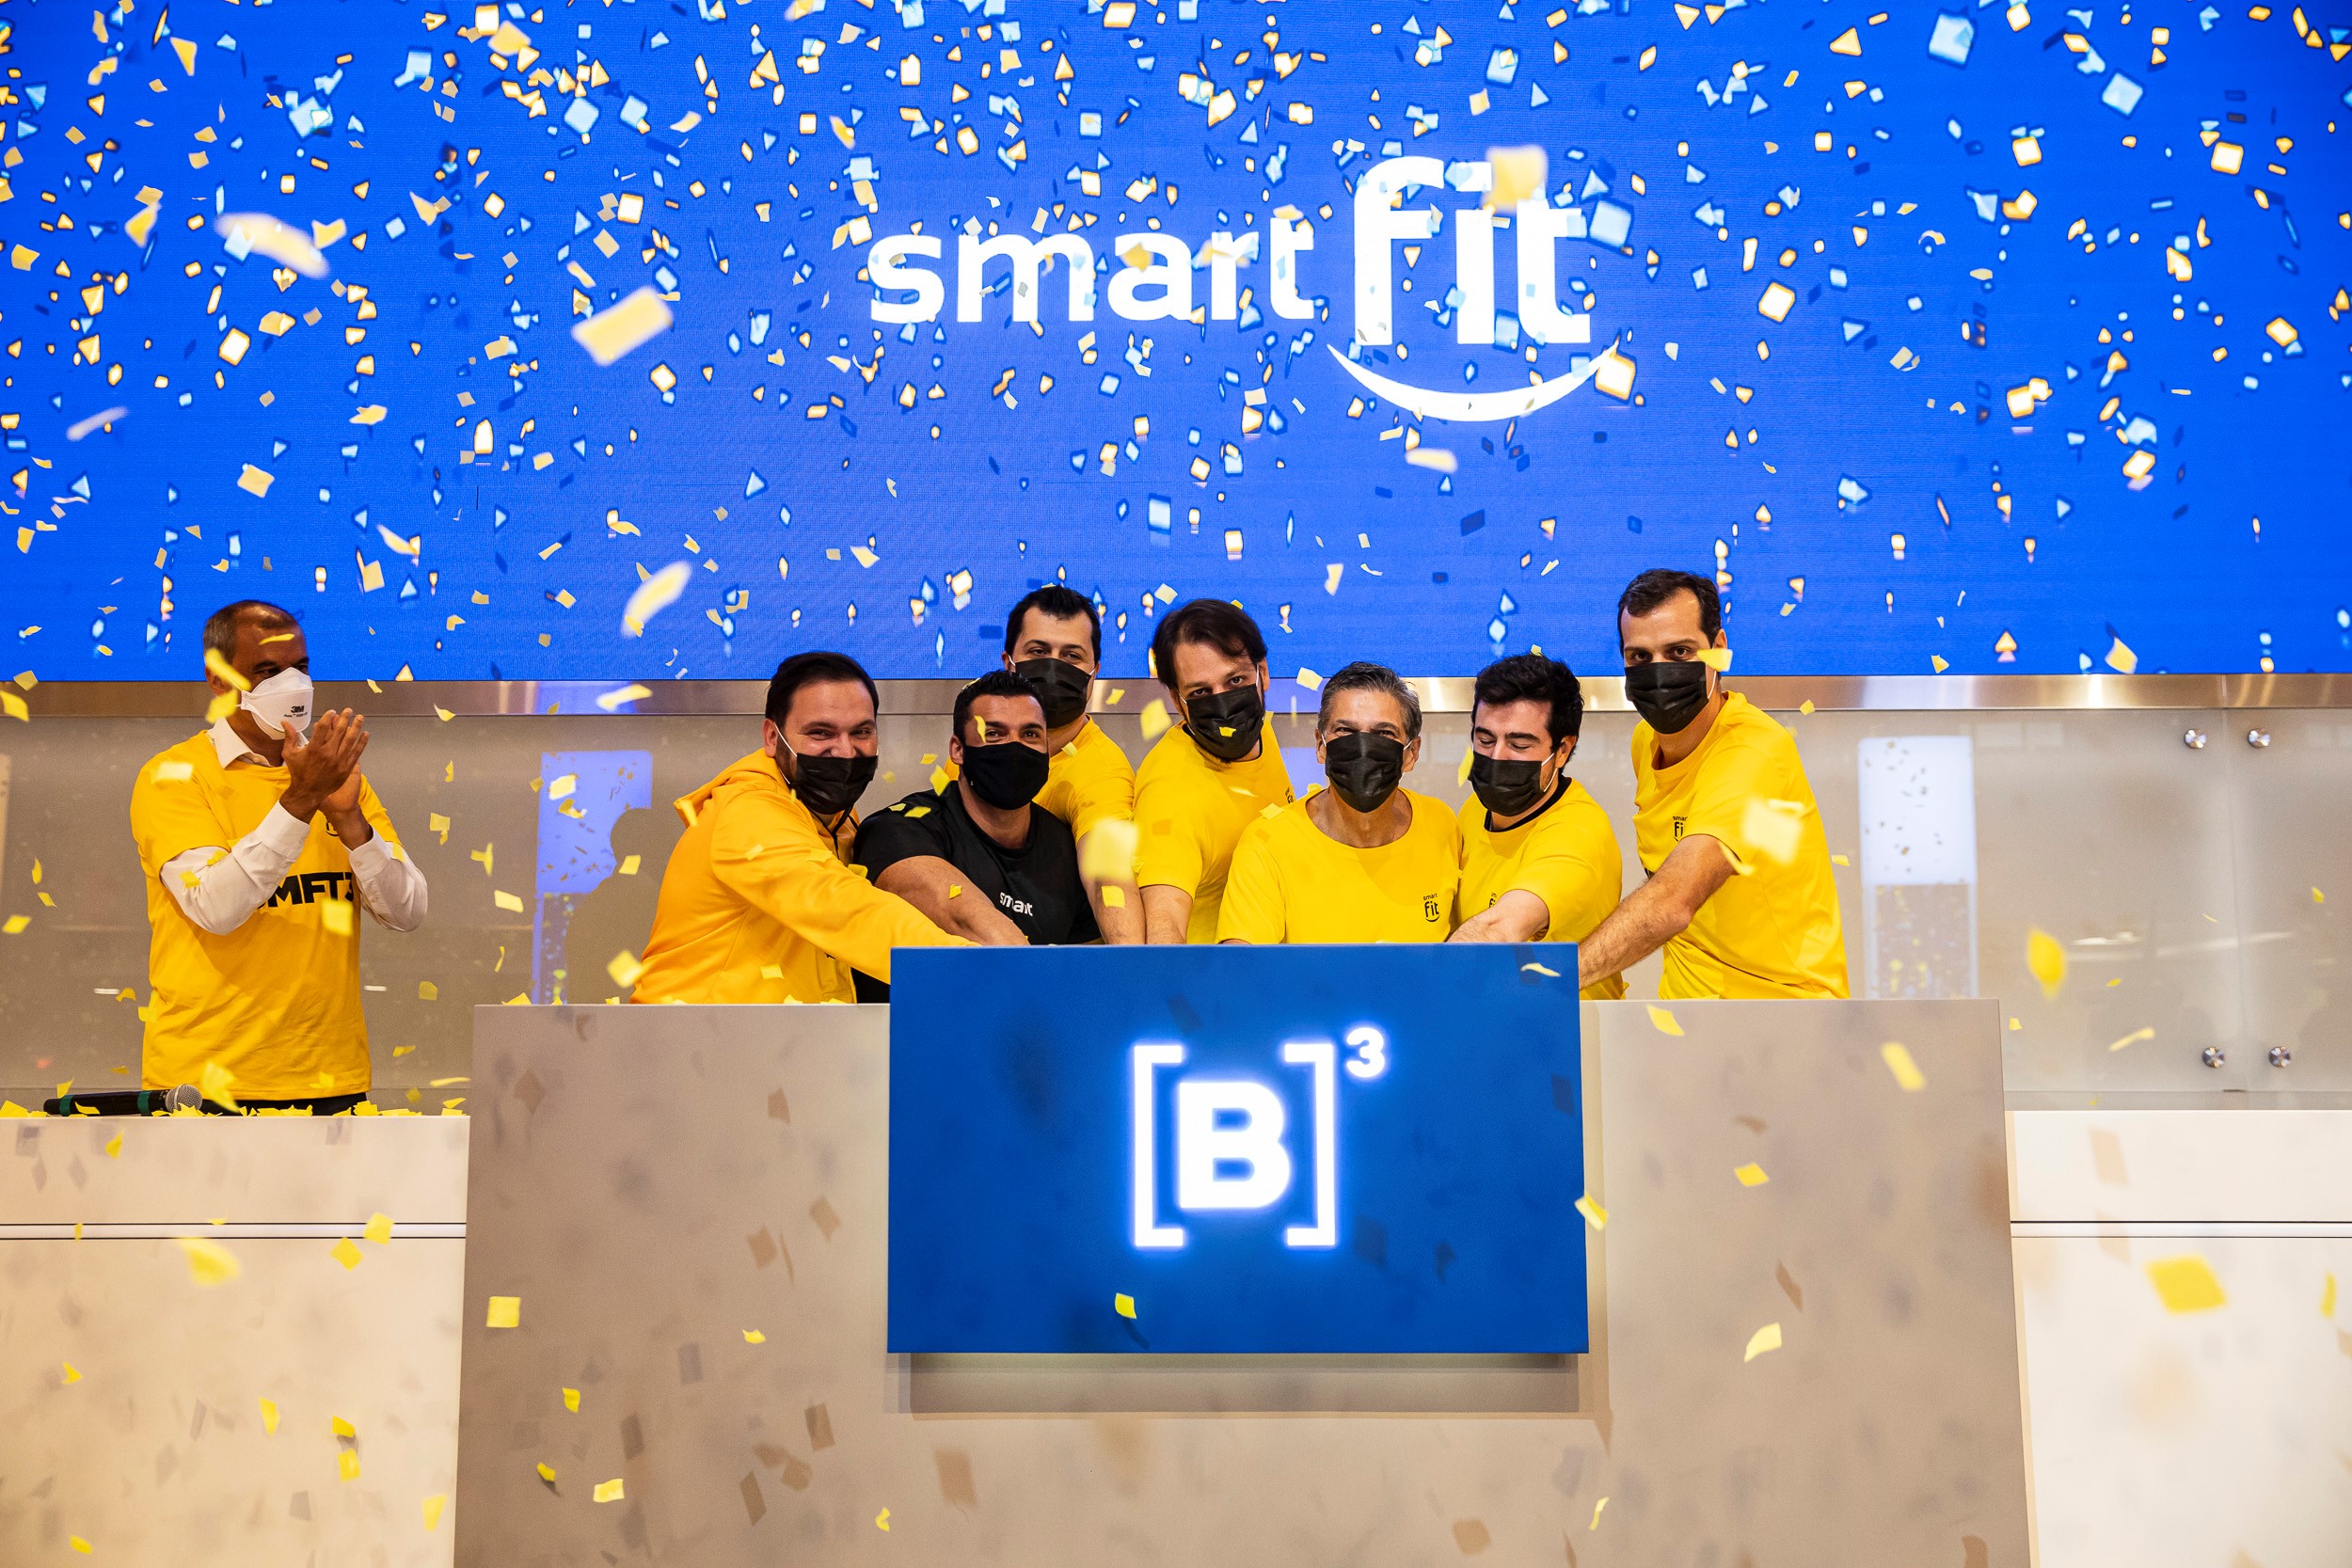 Foto mostra pessoas vestidas com camisetas amarelas e máscaras pretas no momento do toque de campainha. Ao fundo, tela azul com logo da Smart Fit e chuva de papel picado amarelo.